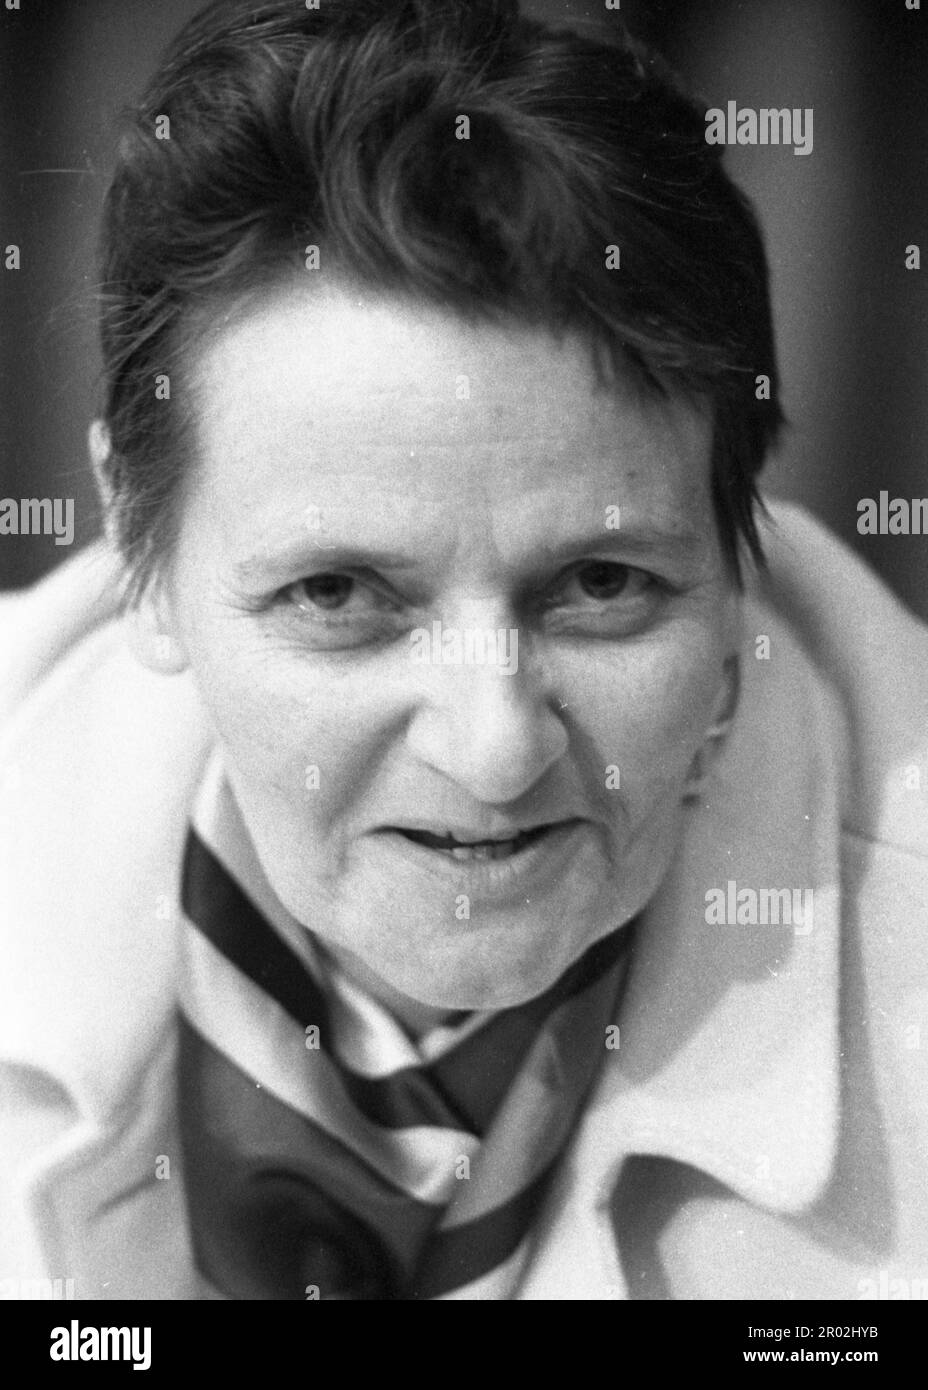 Personnalités de la politique, des affaires et de la culture des années 1965-71. Dr. Renate Riemeck (SPD plus tard DFU) historien, mère nourricienne d'Ulrike Banque D'Images